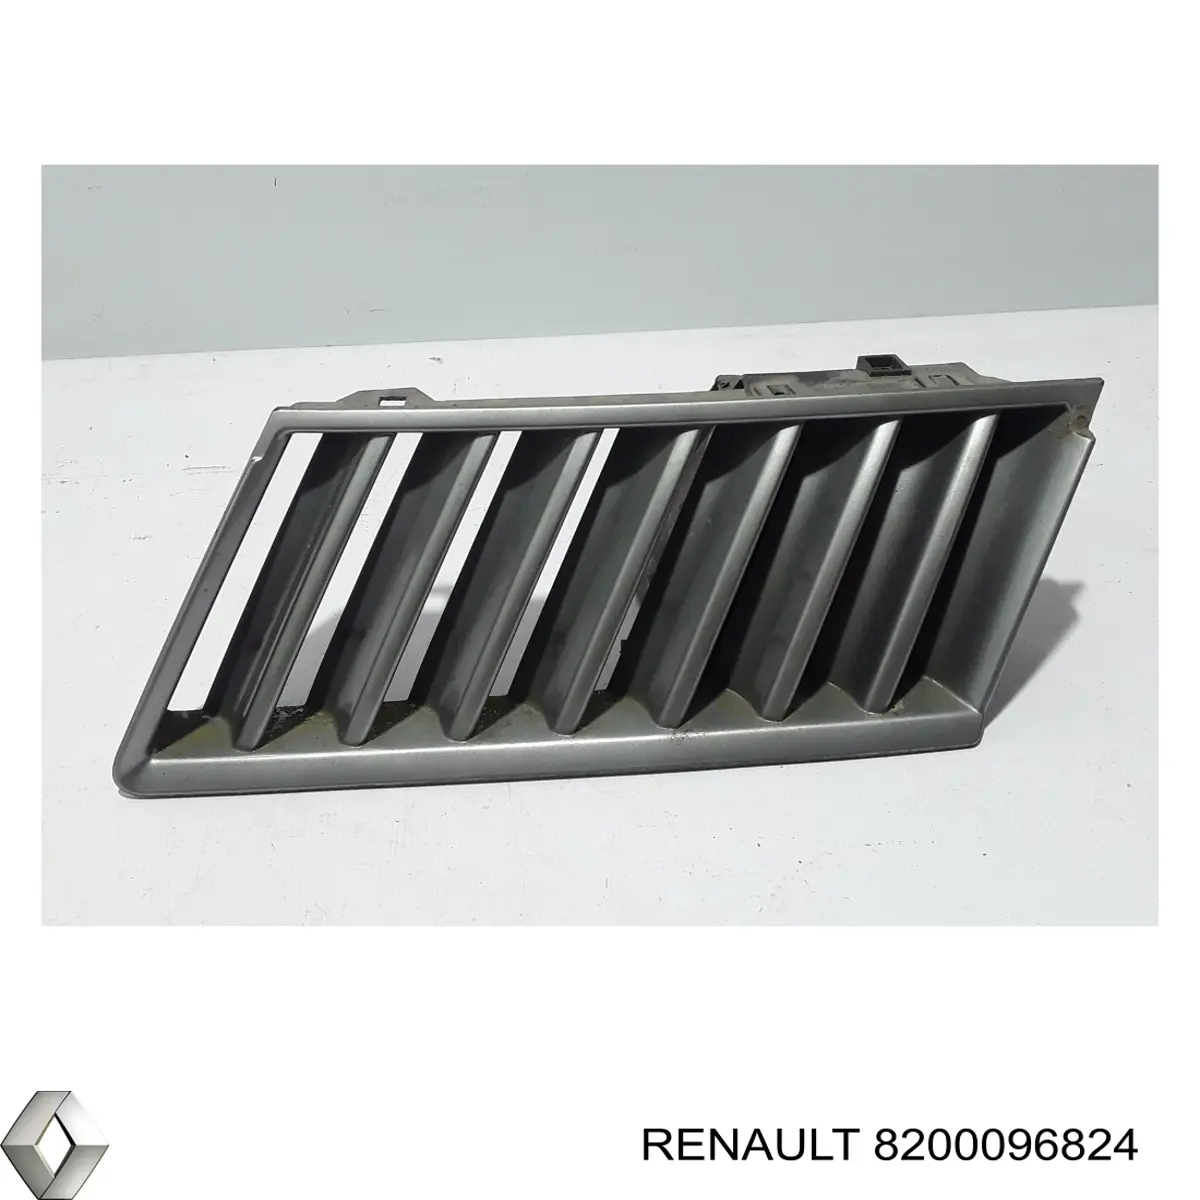 8200096824 Renault (RVI) grelha do radiador esquerda